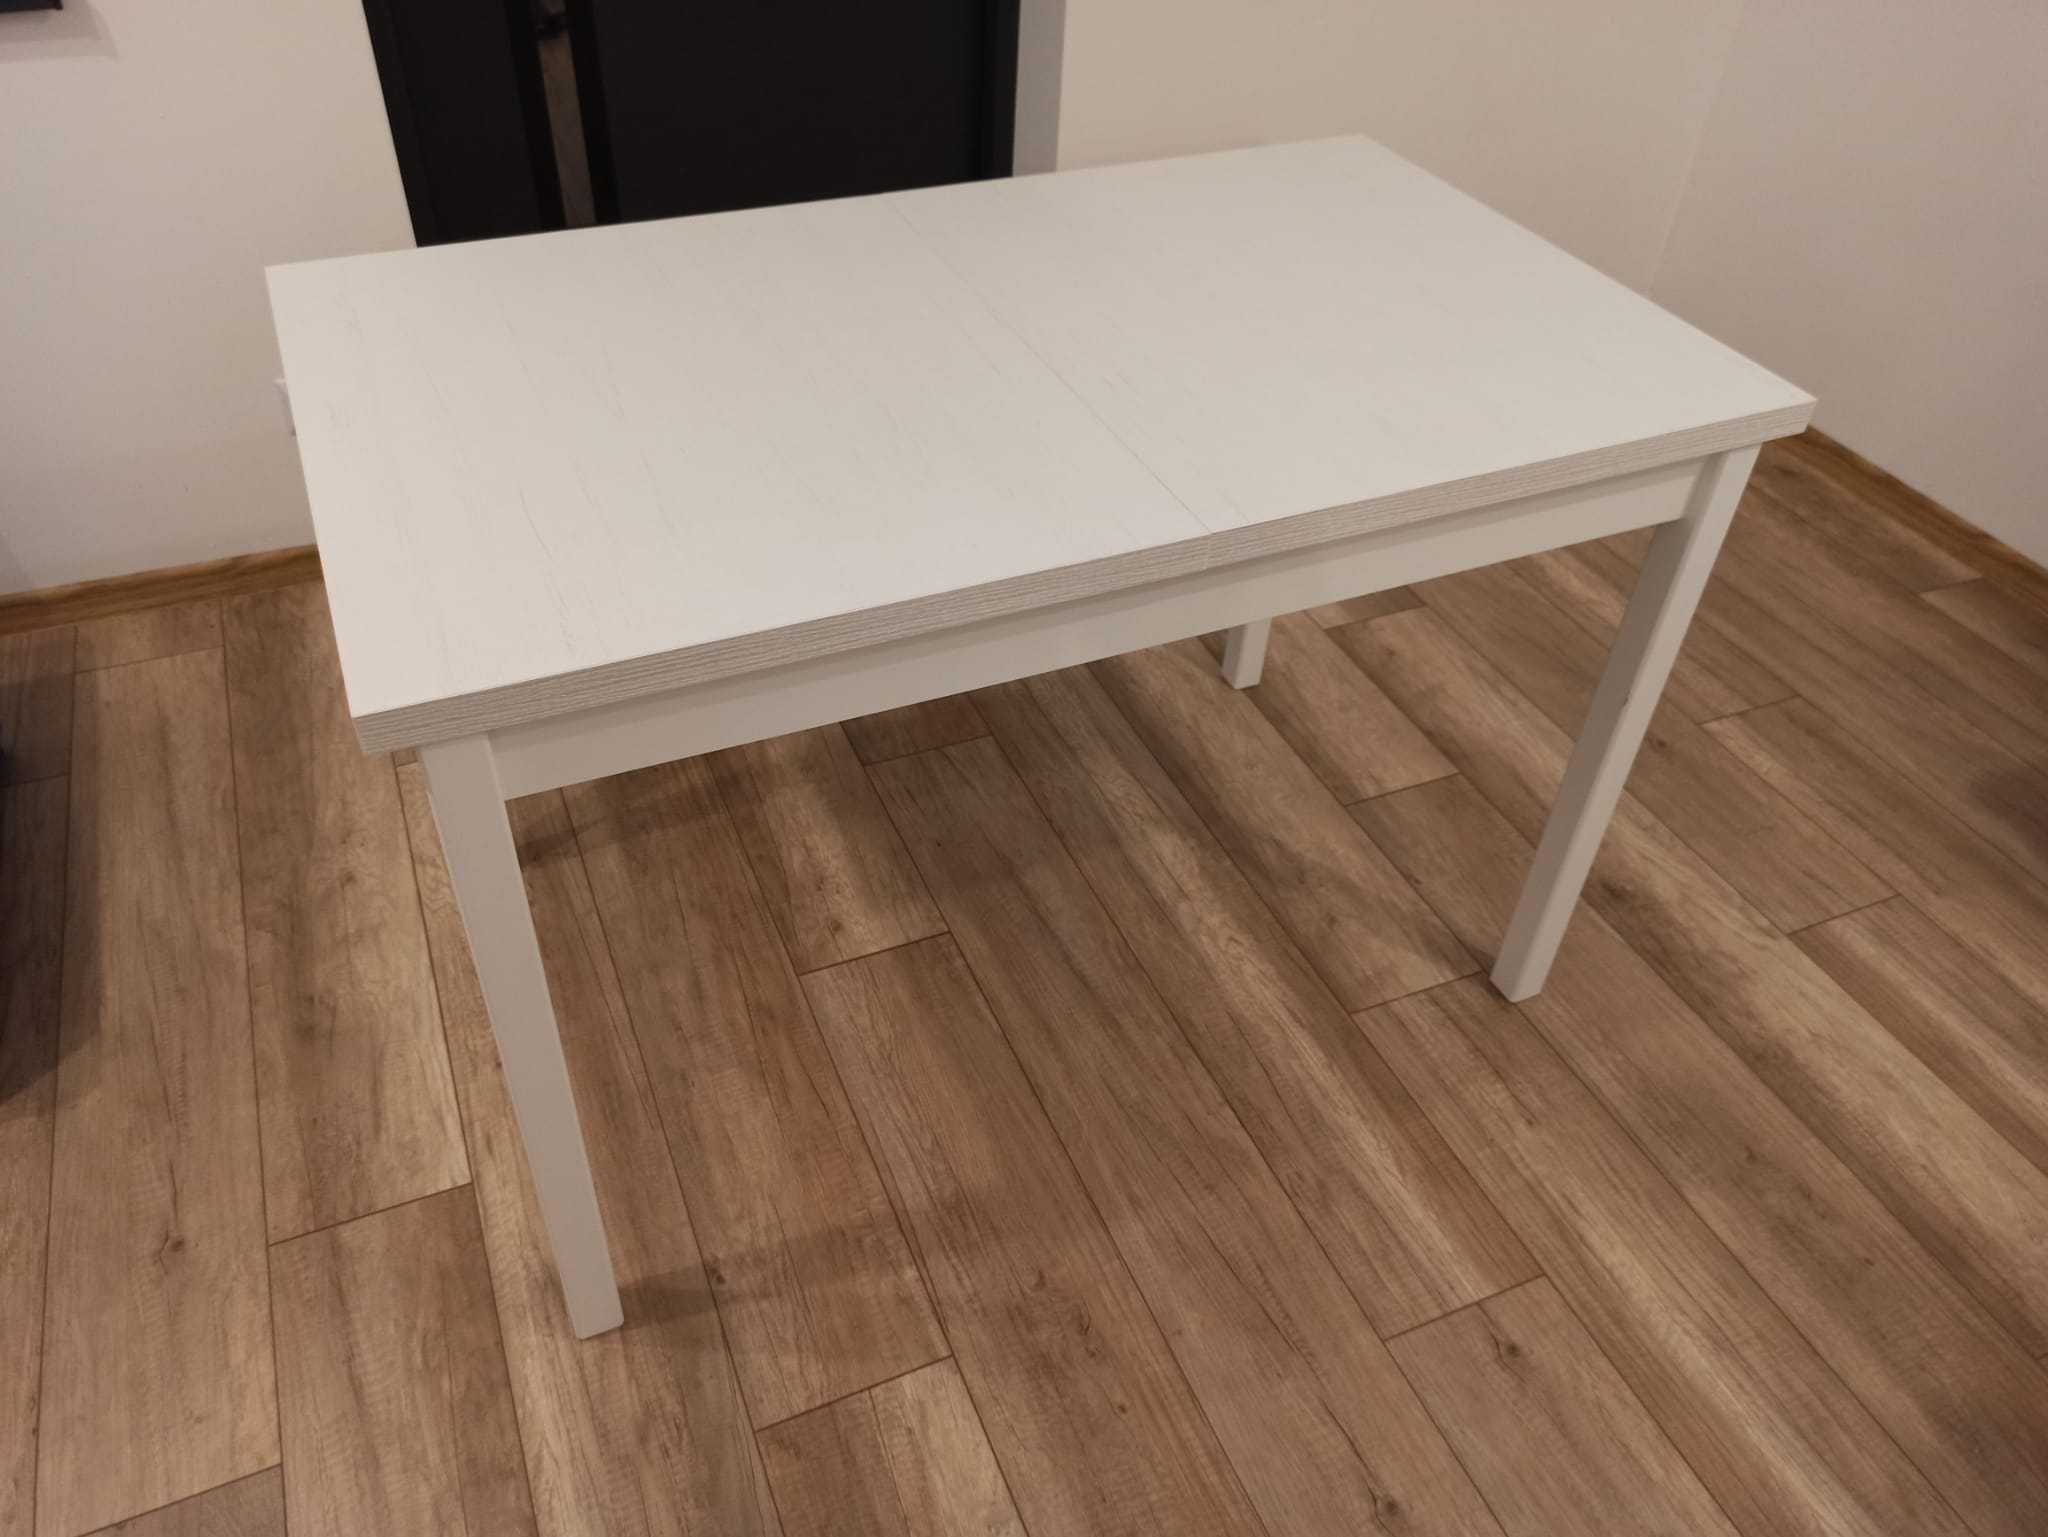 Stół rozkładany kuchnia / salon 70 x 120 x 78 cm biały